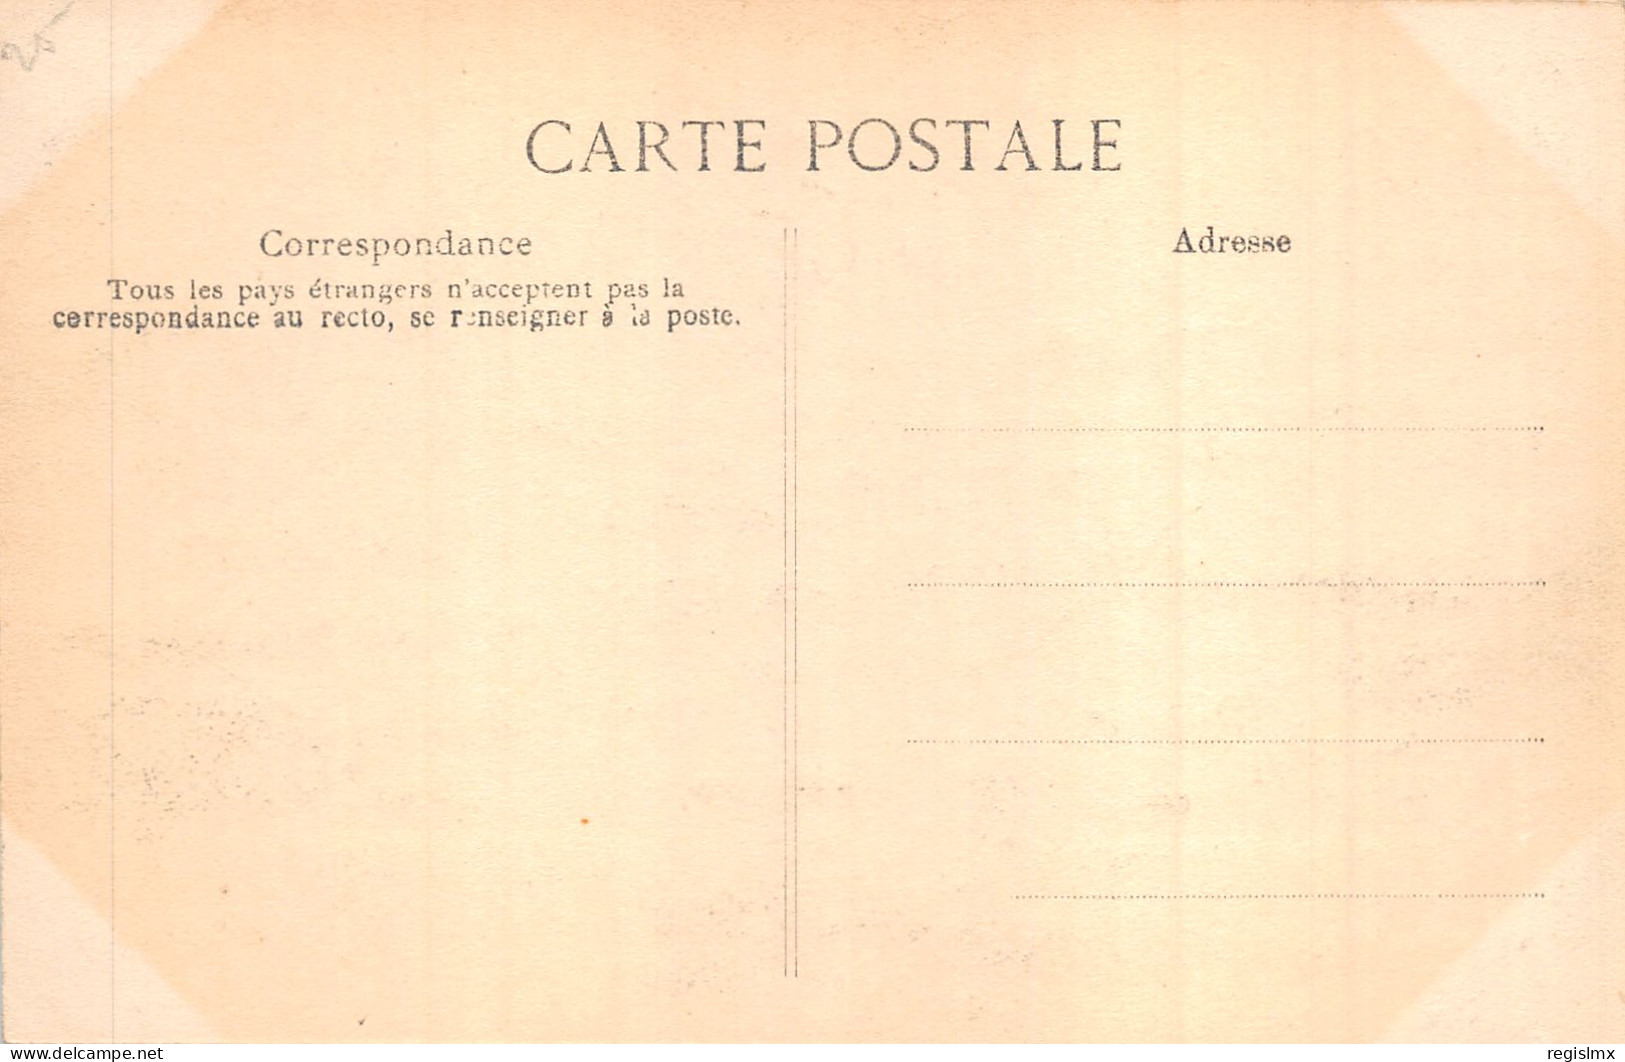 75-PARIS-CRUE DE LA SEINE-N°T2408-A/0075 - Paris Flood, 1910